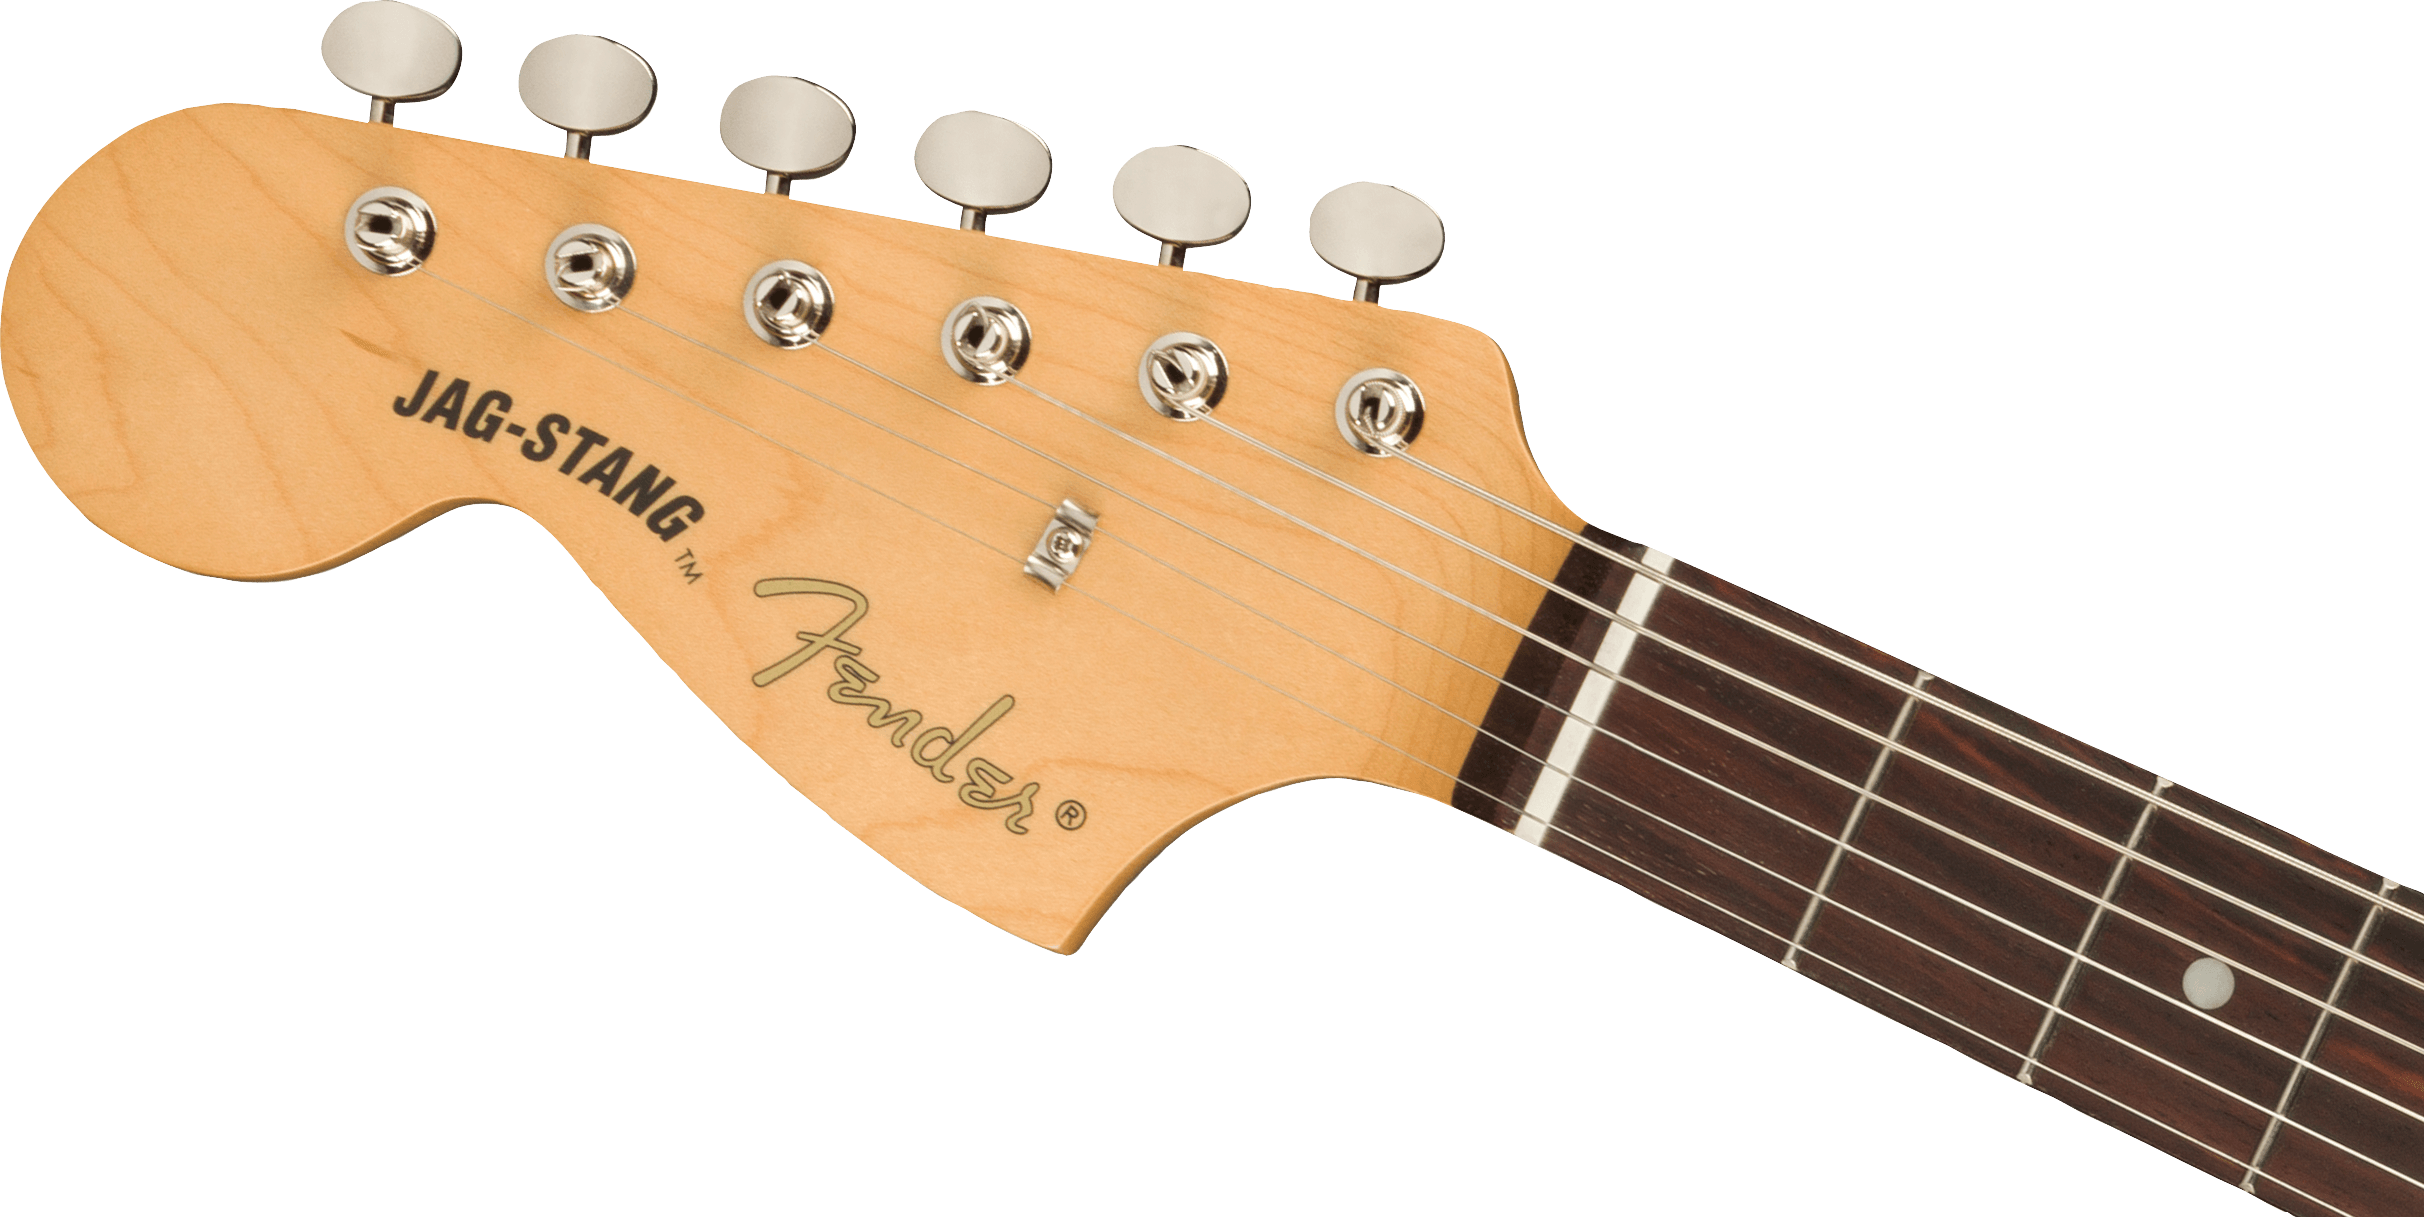 Fender Jag-stang Kurt Cobain Artist Gaucher Hs Trem Rw - Fiesta Red - Guitare Électrique Gaucher - Variation 3